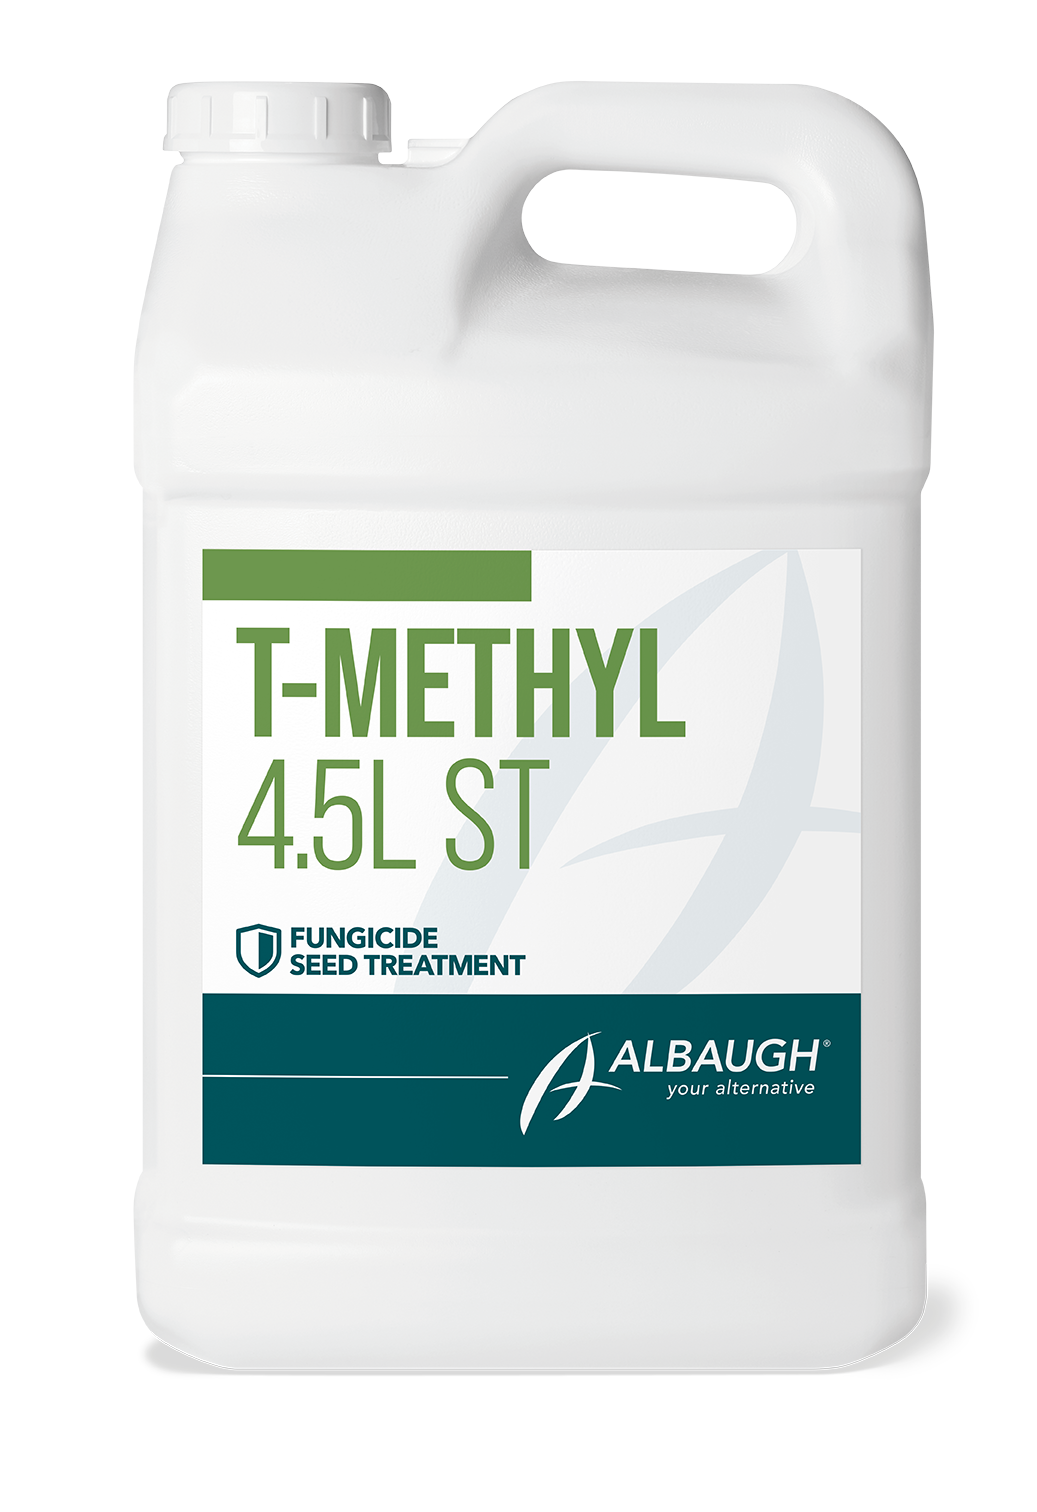 T-Methyl 4.5L ST